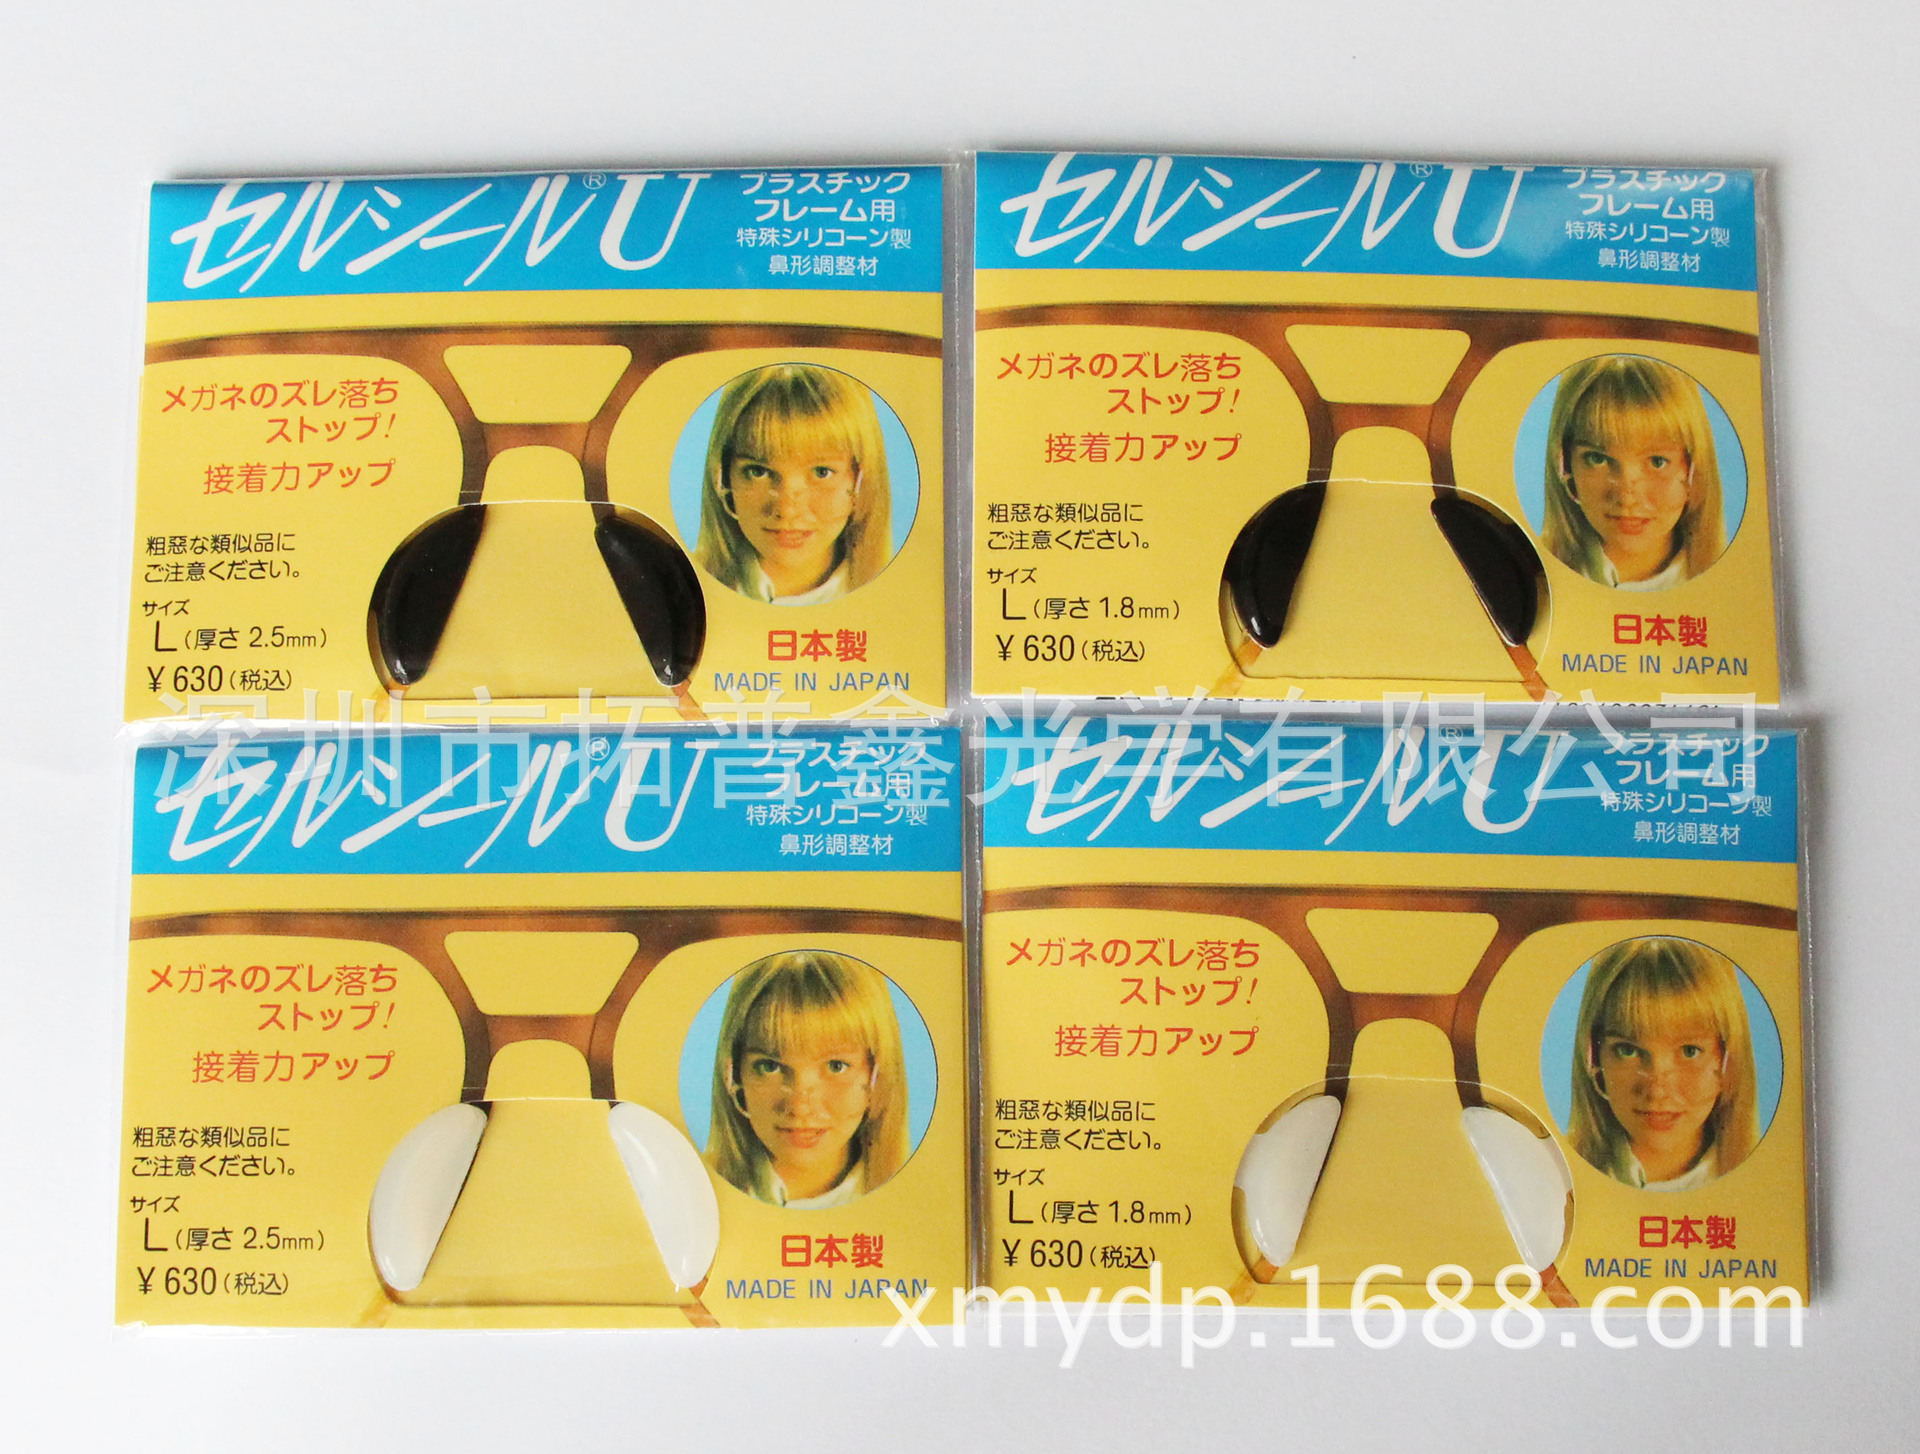 【批发日本防滑鼻垫硅胶增高鼻托板材眼镜鼻托